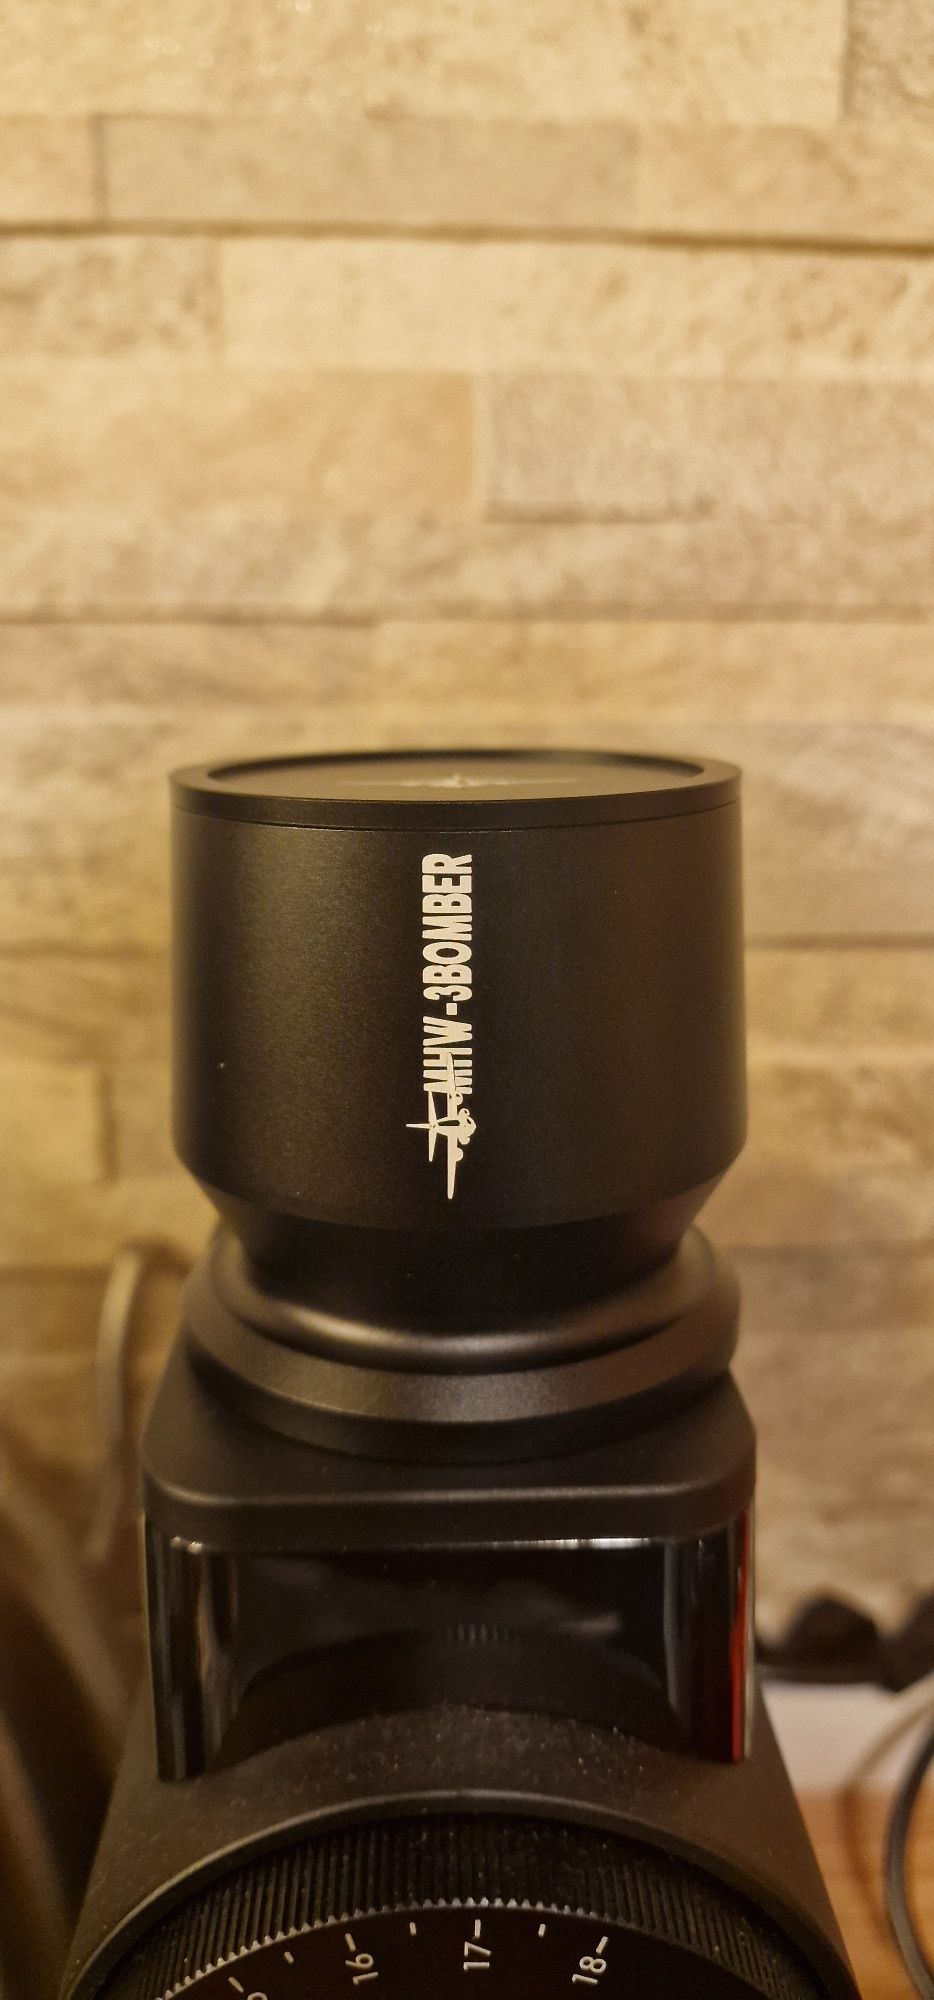 Blind shaker cafea MHW-3BOMBER, 58mm - Nou, sigilat